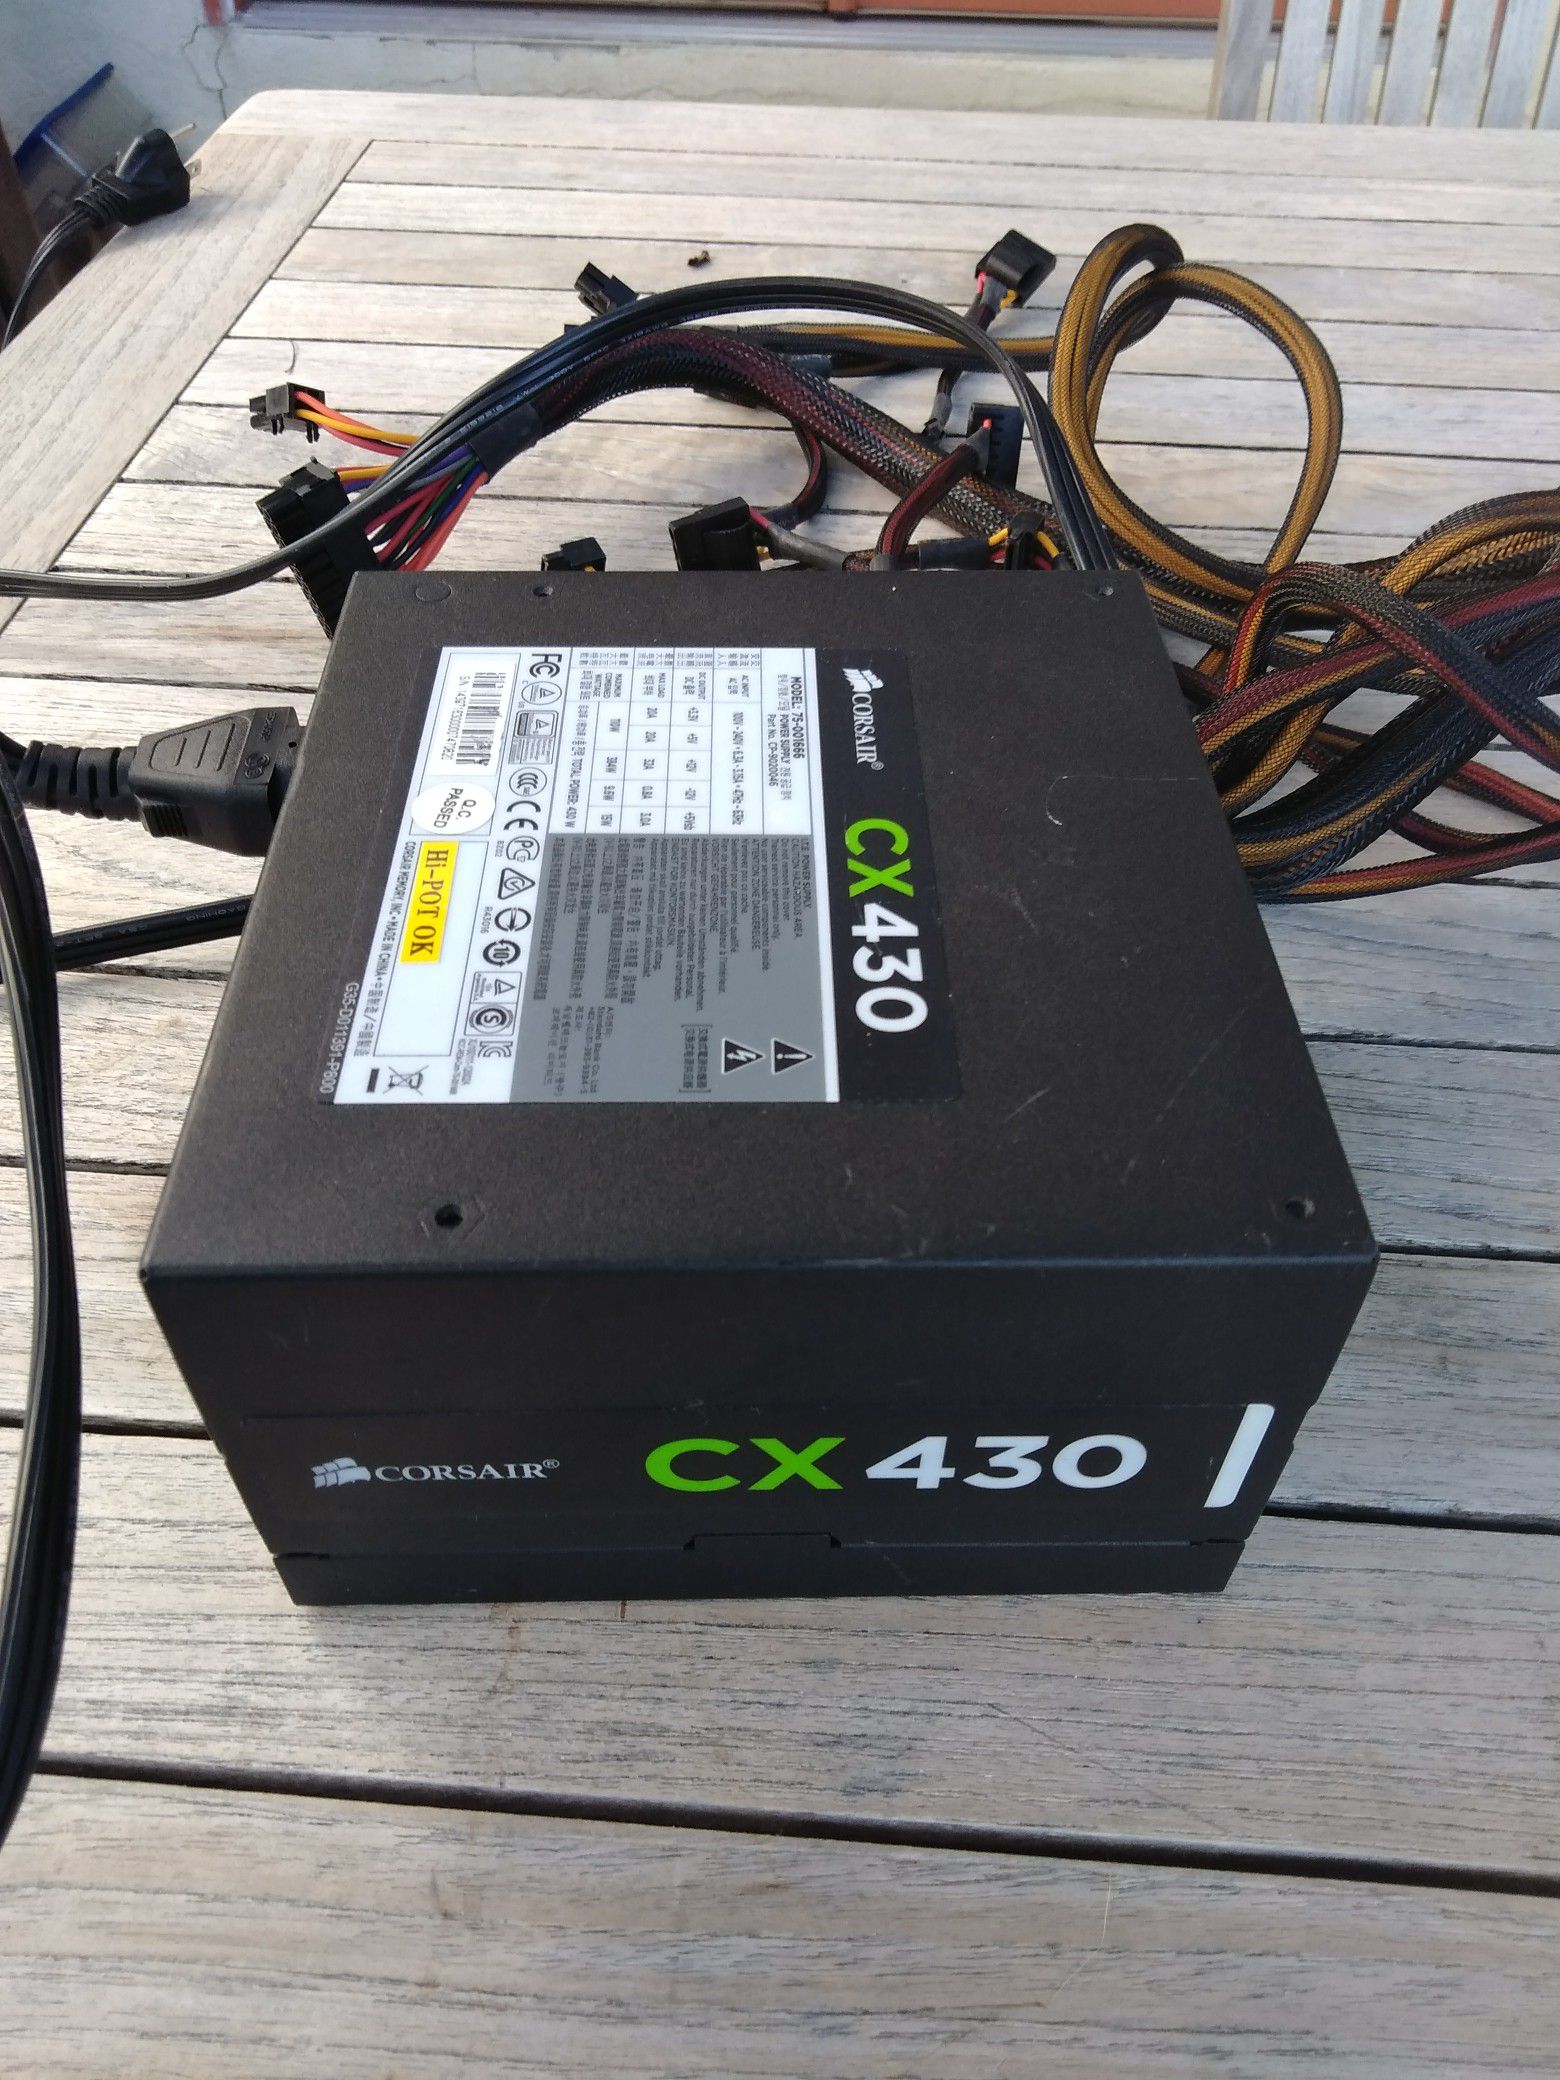 Corsair CX 430 watt gaming power supply